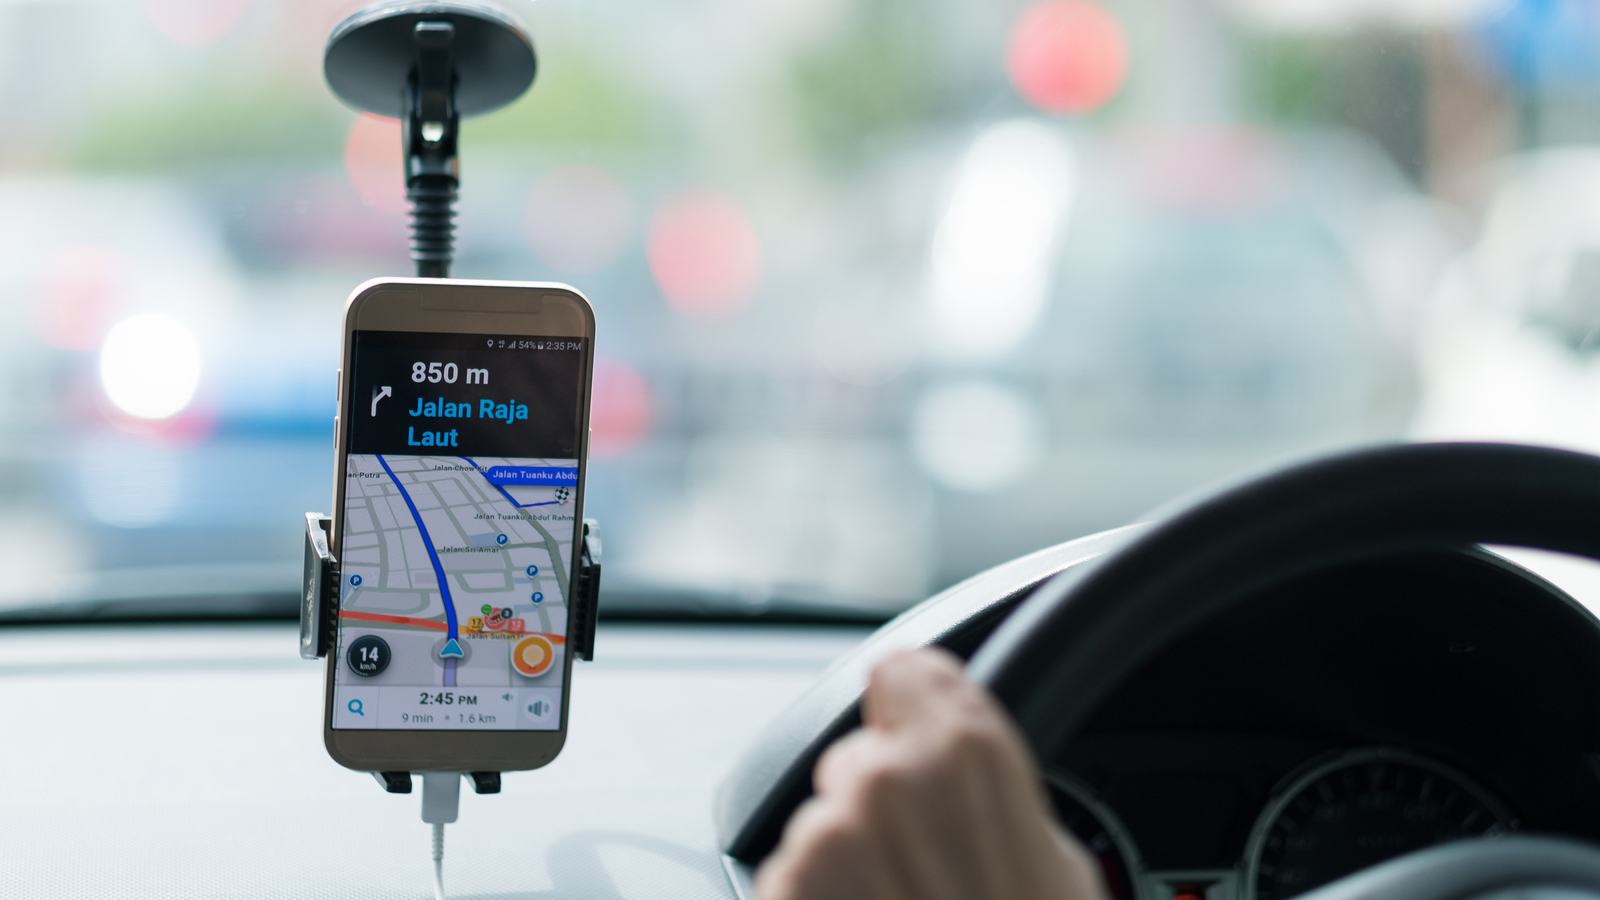 Uber et Lyft menacent d'arrêter temporairement d'exercer en Californie s'ils doivent requalifier leurs livreurs en salariés